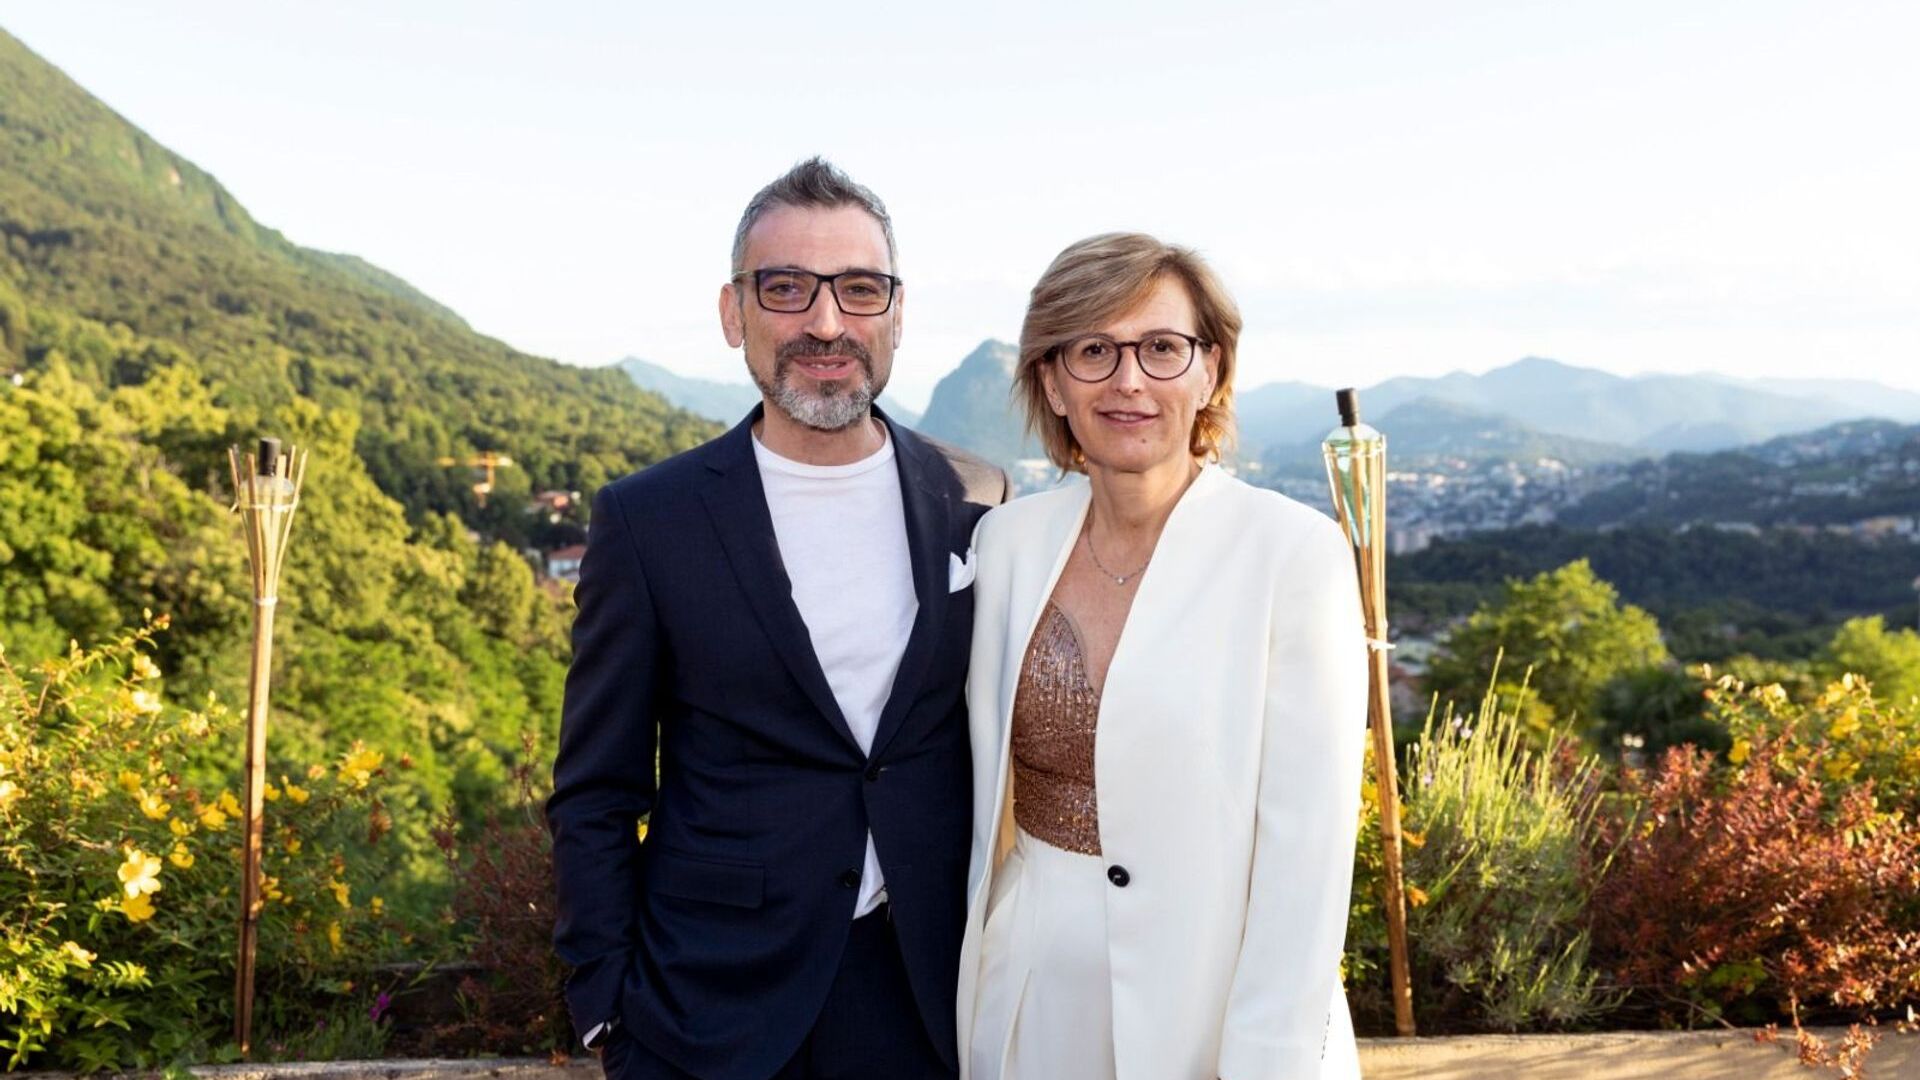 Cristina Giotto ประธาน และ Luca Mauriello รองประธาน รวมผู้บริหารระดับสูงคนใหม่ของ ated-ICT Ticino